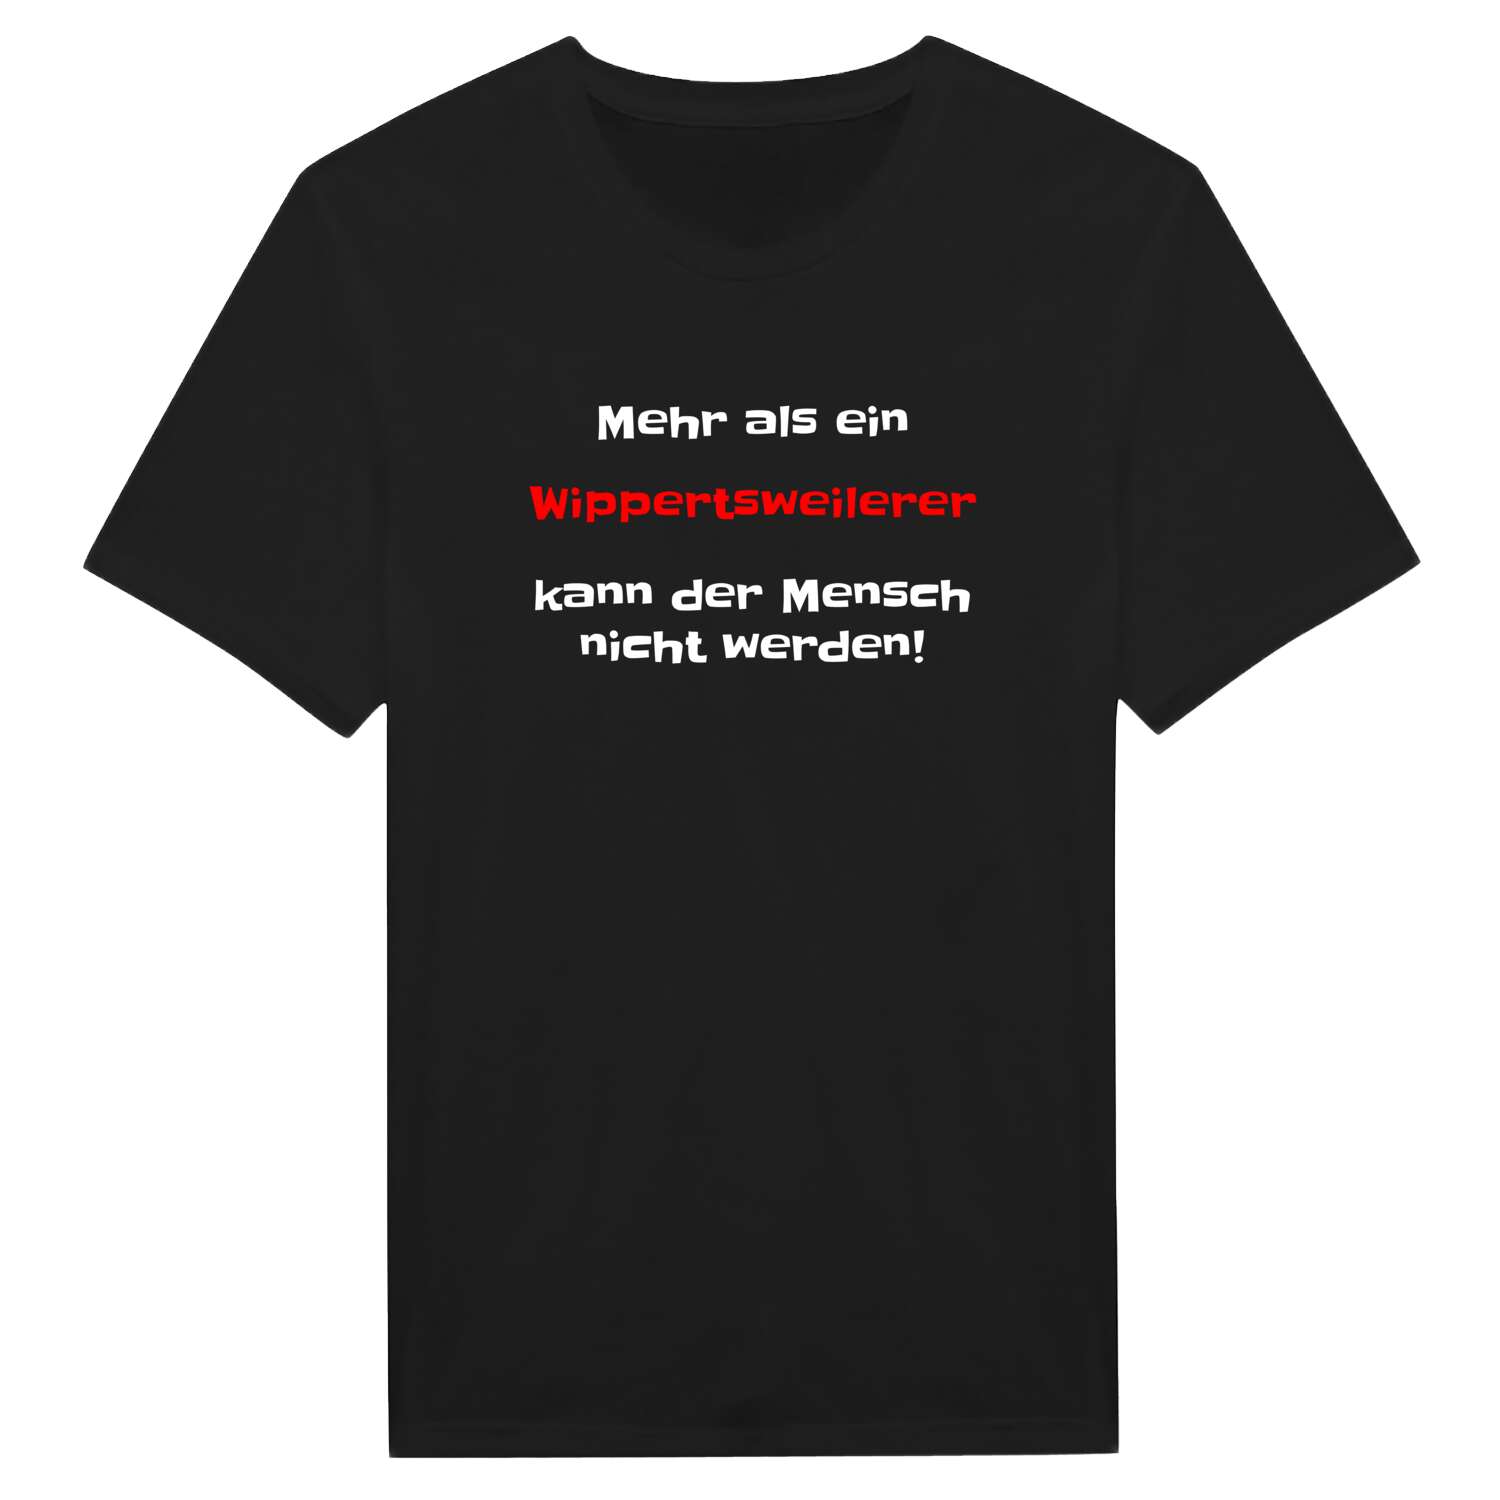 Wippertsweiler T-Shirt »Mehr als ein«